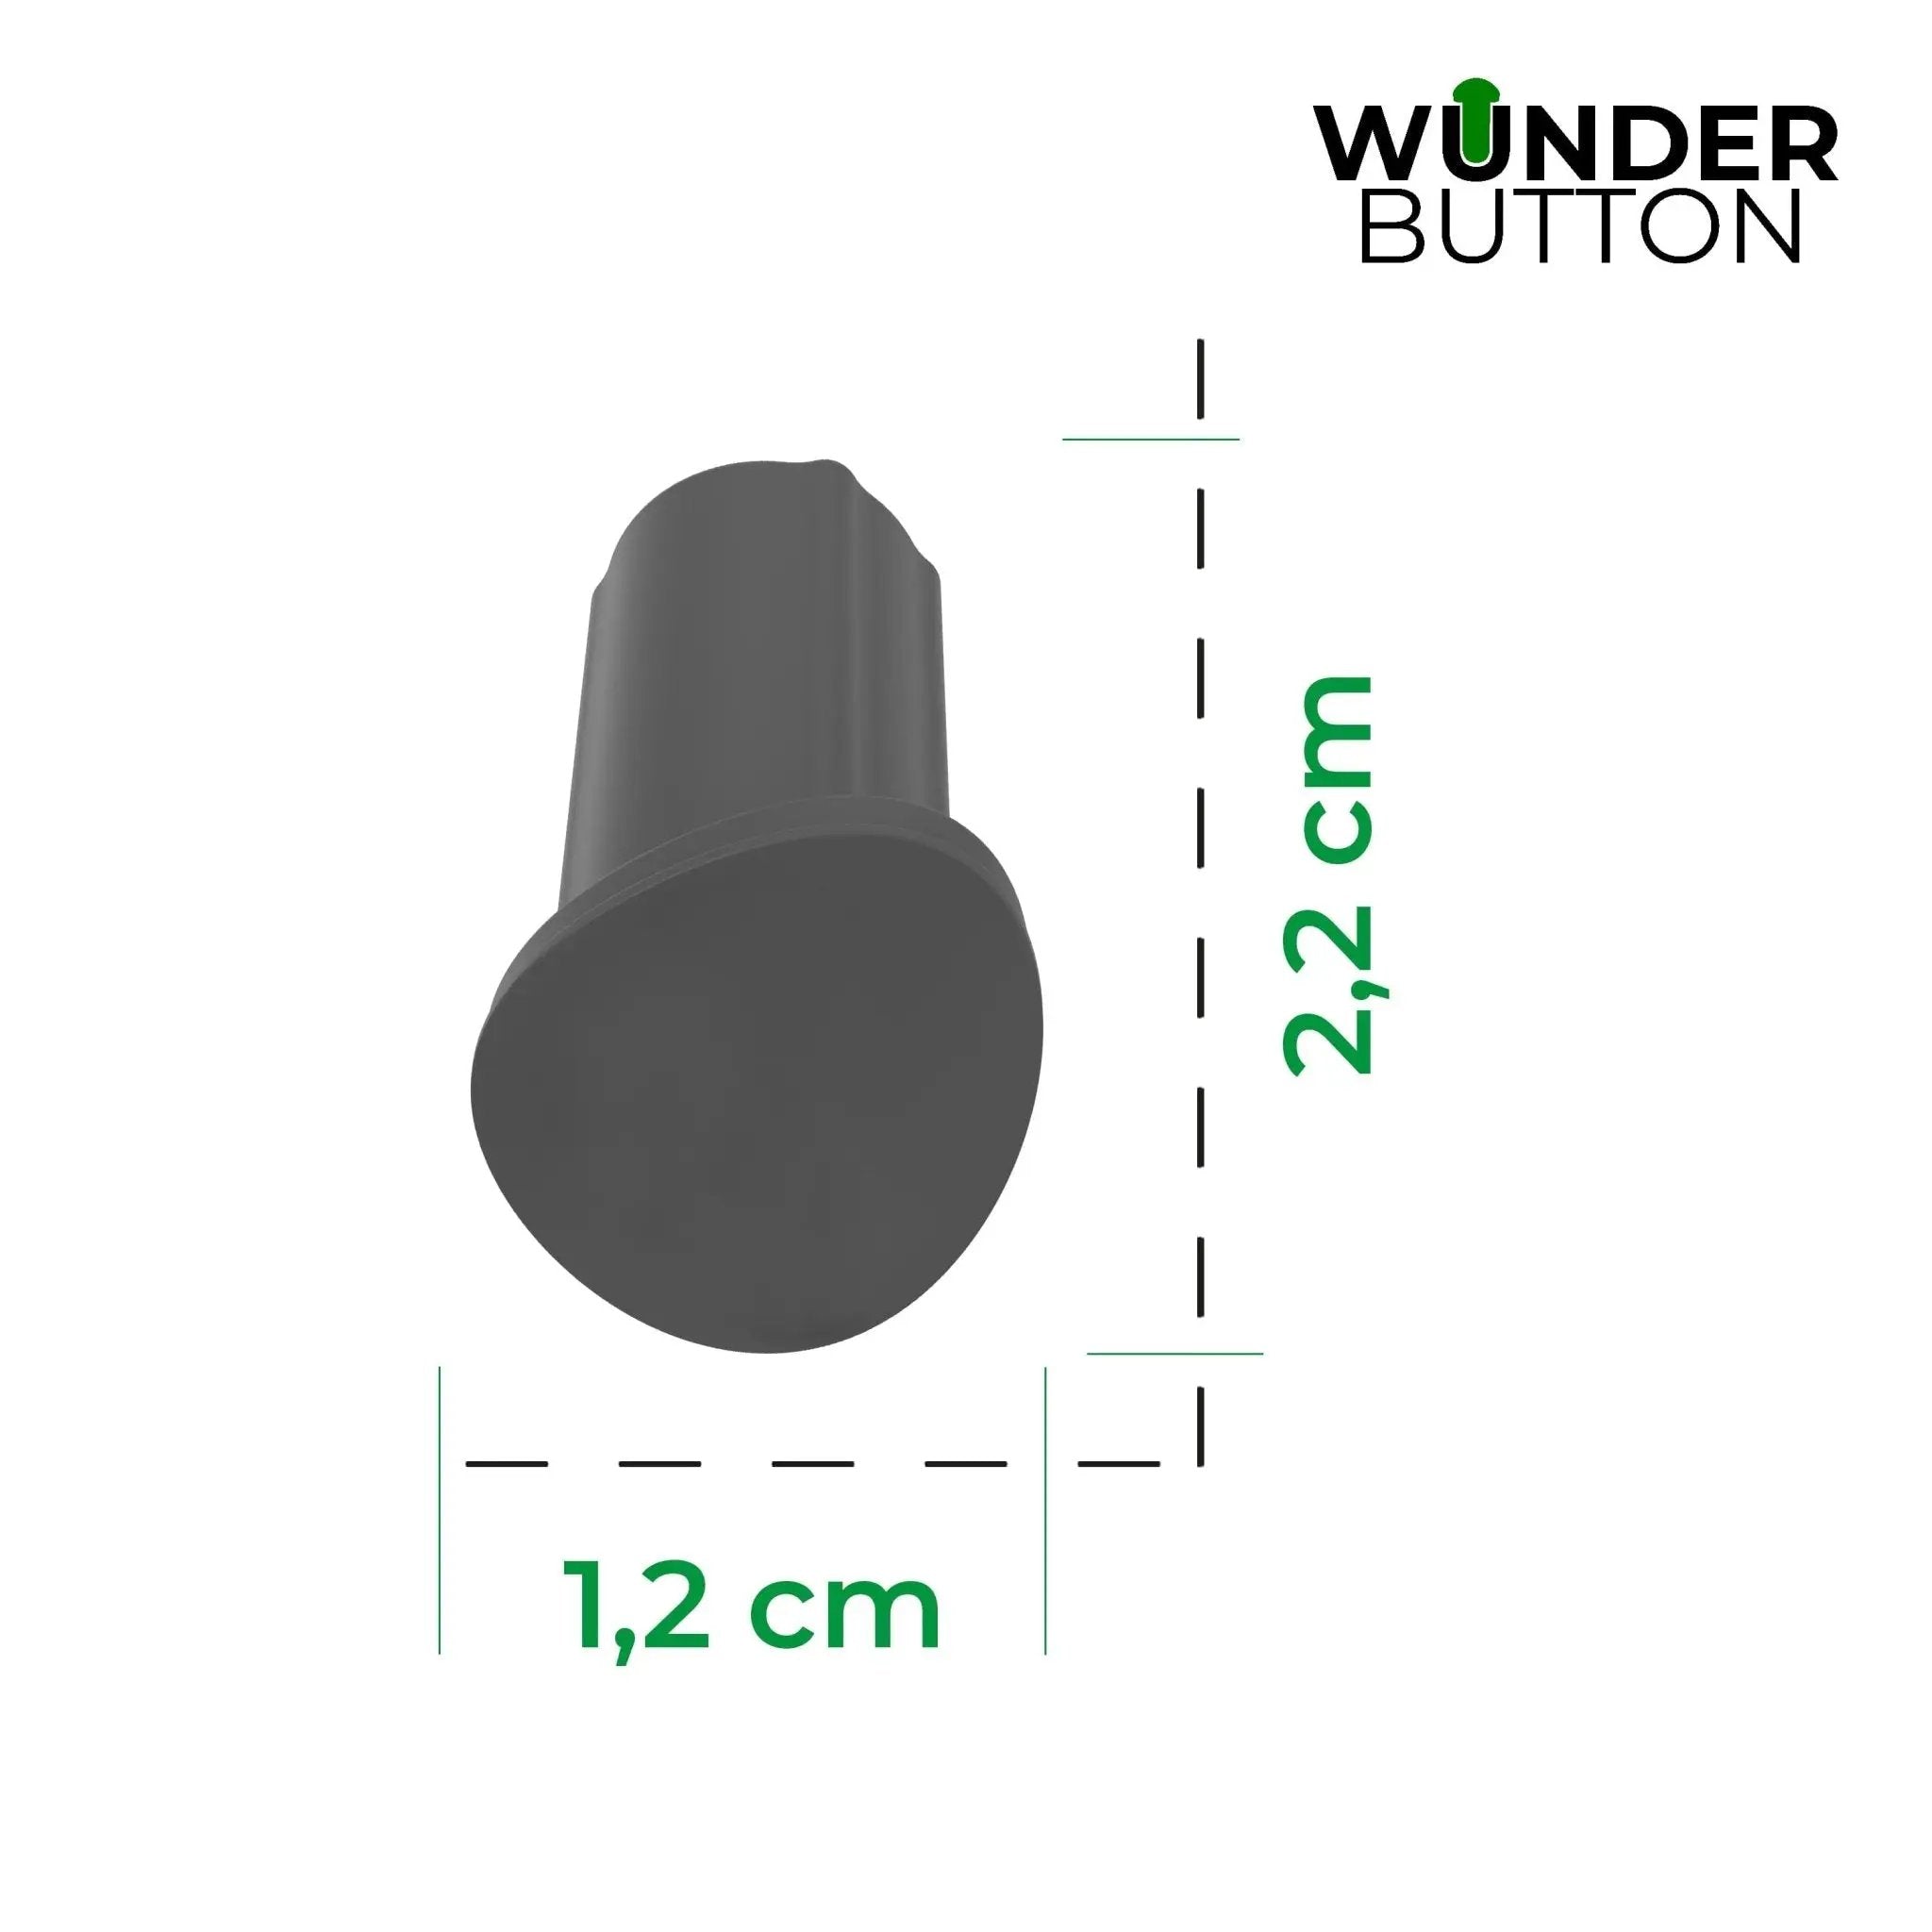 WunderButton® | Verschlussstöpsel für Mixtopf-Griff | TM6, TM5 und TM Friend - Wundermix GmbH